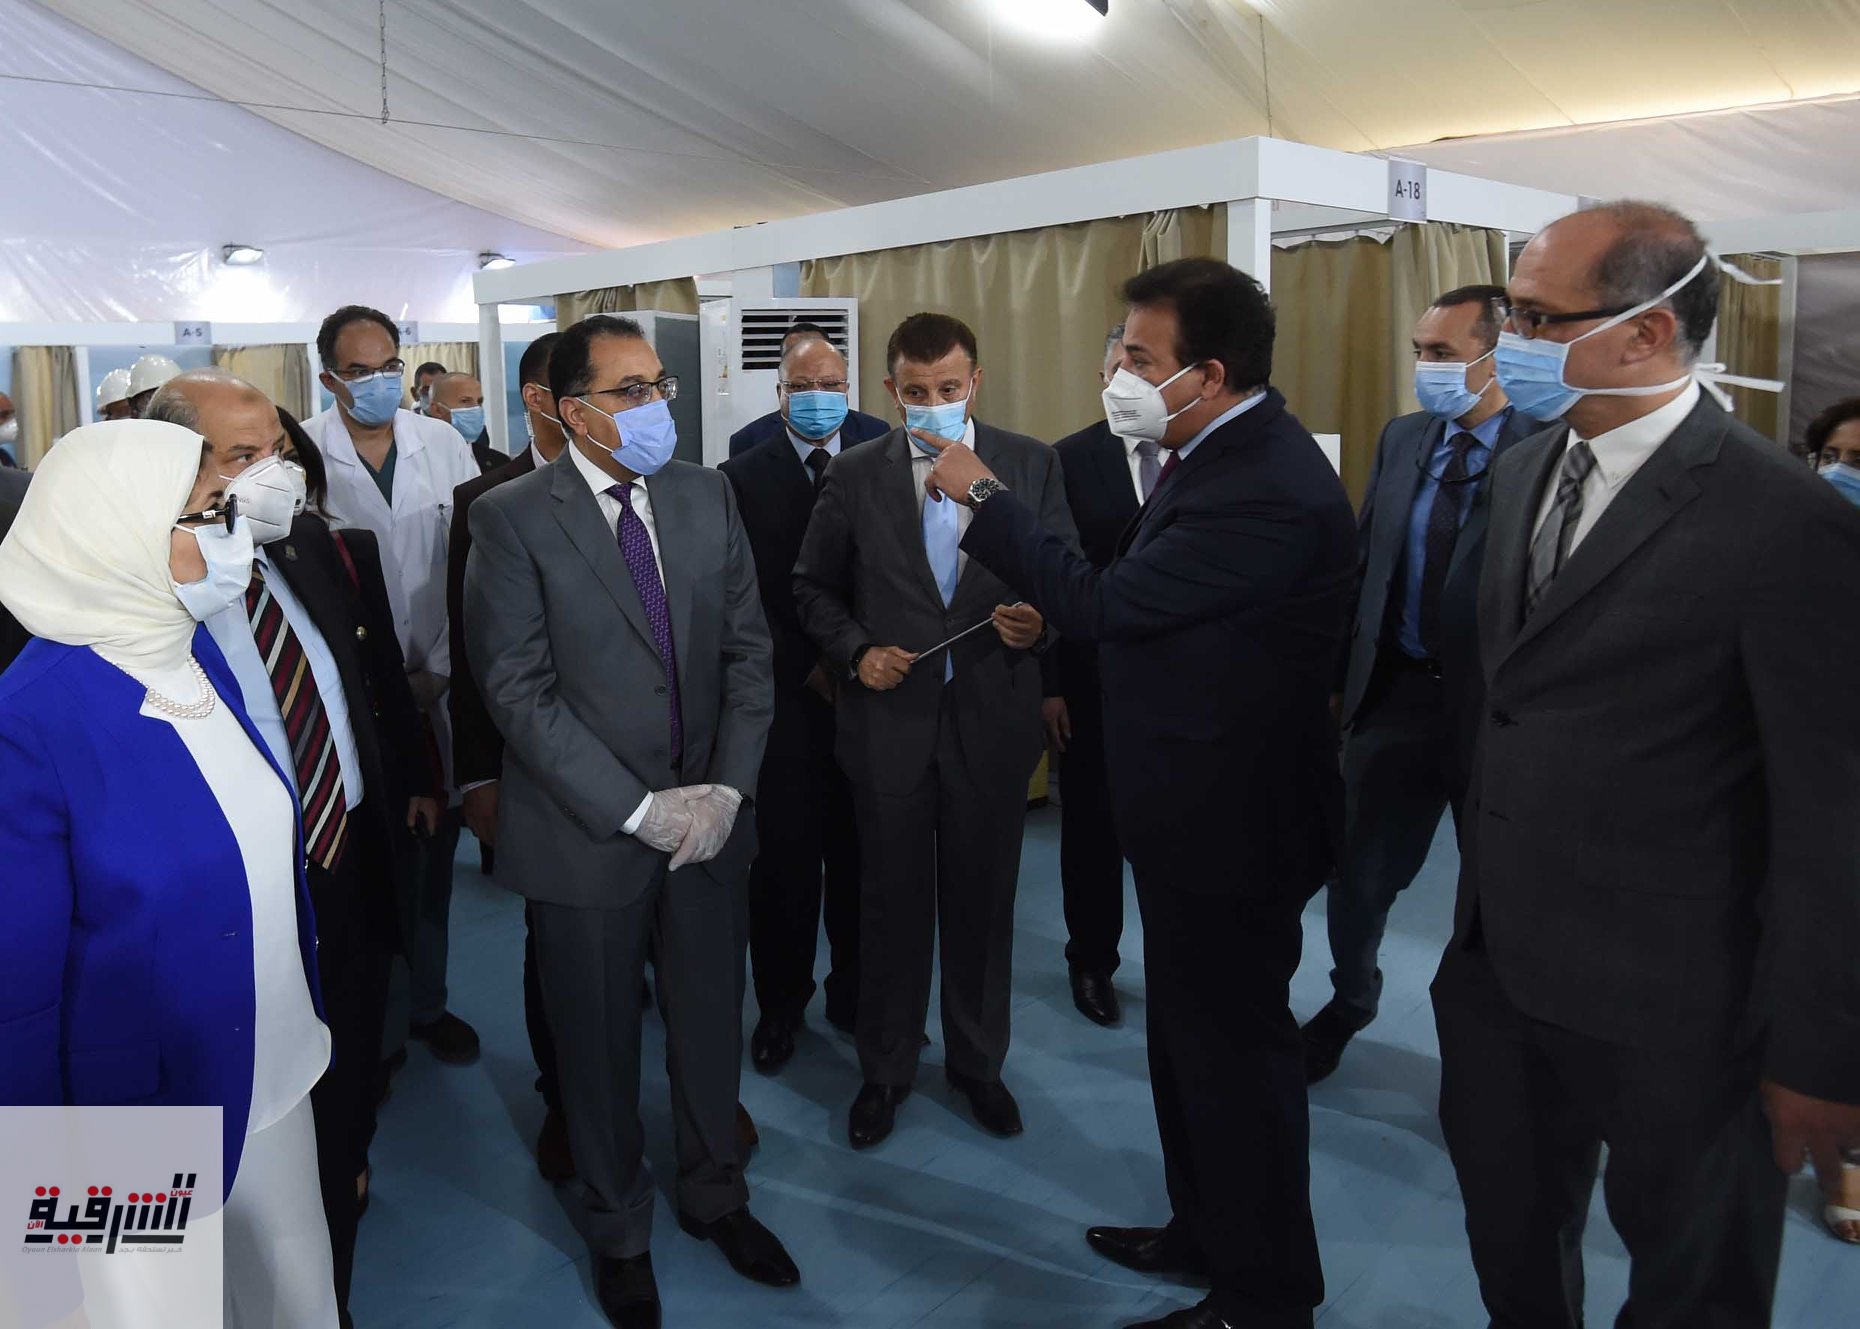 رئيس الوزراء يتفقد المستشفى الميداني بجامعة عين شمس تمهيداً لبدء تشغيله الخميس القادم لمواجهة فيروس كورونا